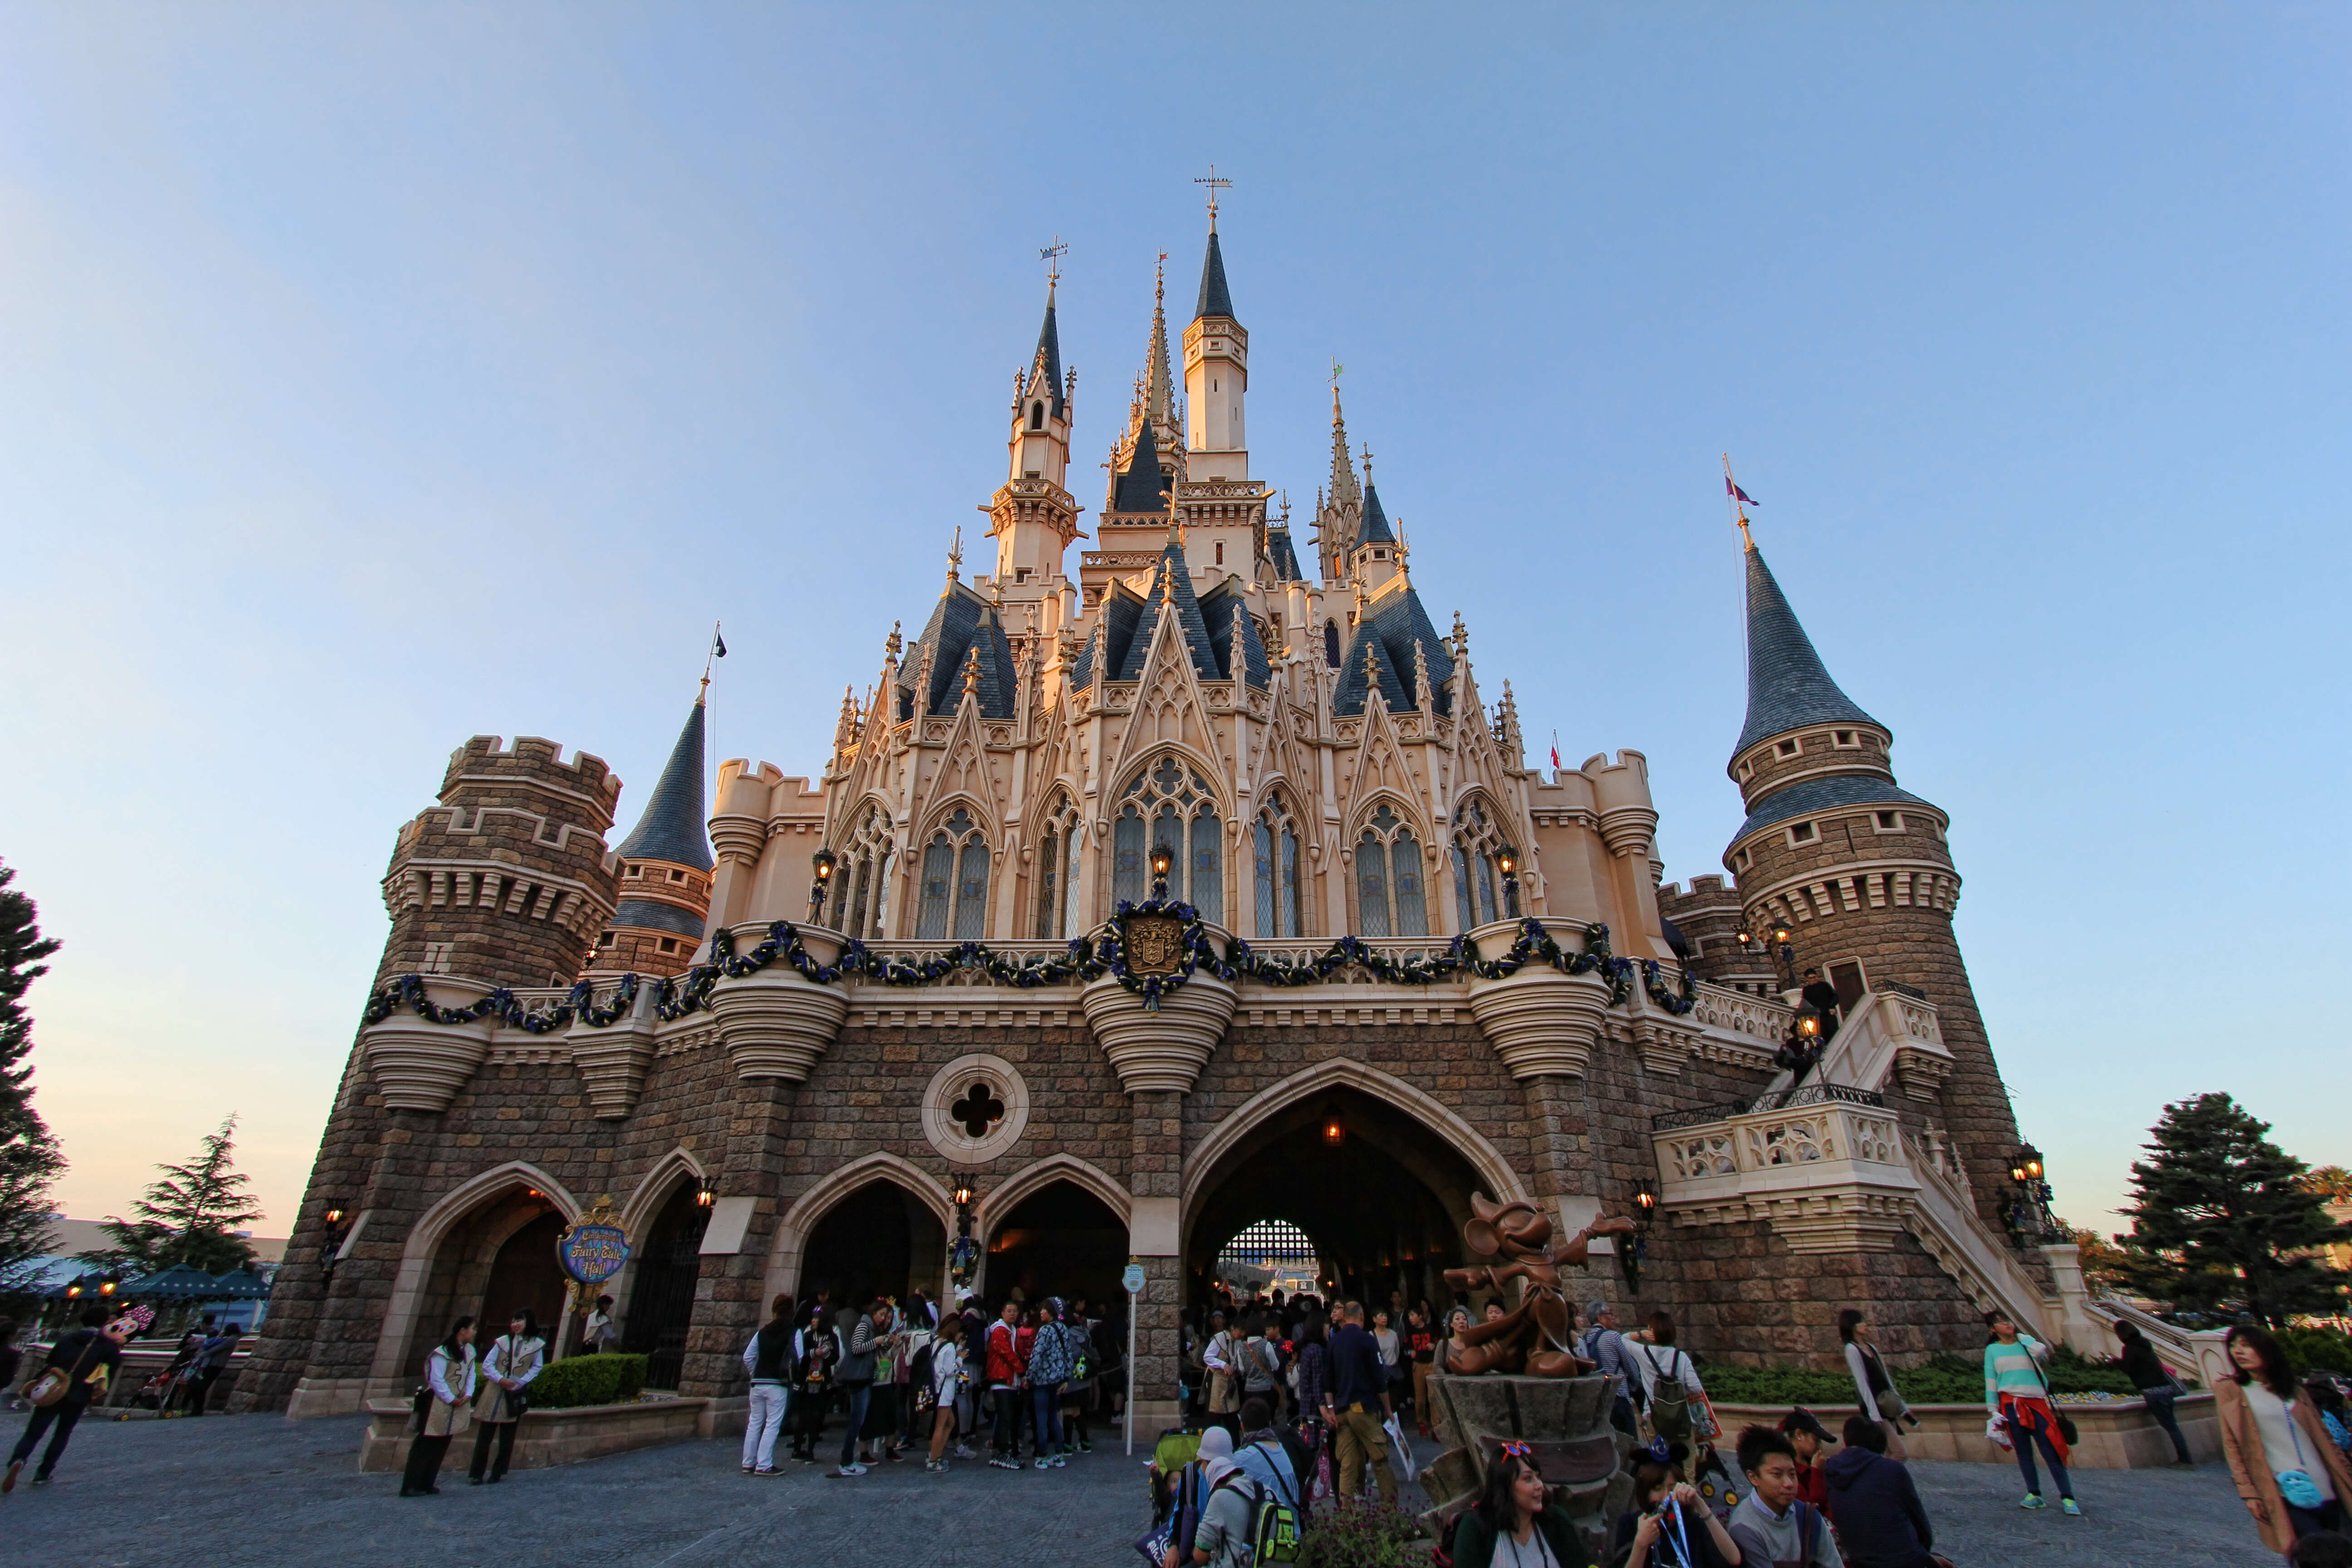 Cinderella's castle at Tokyo Disneyland